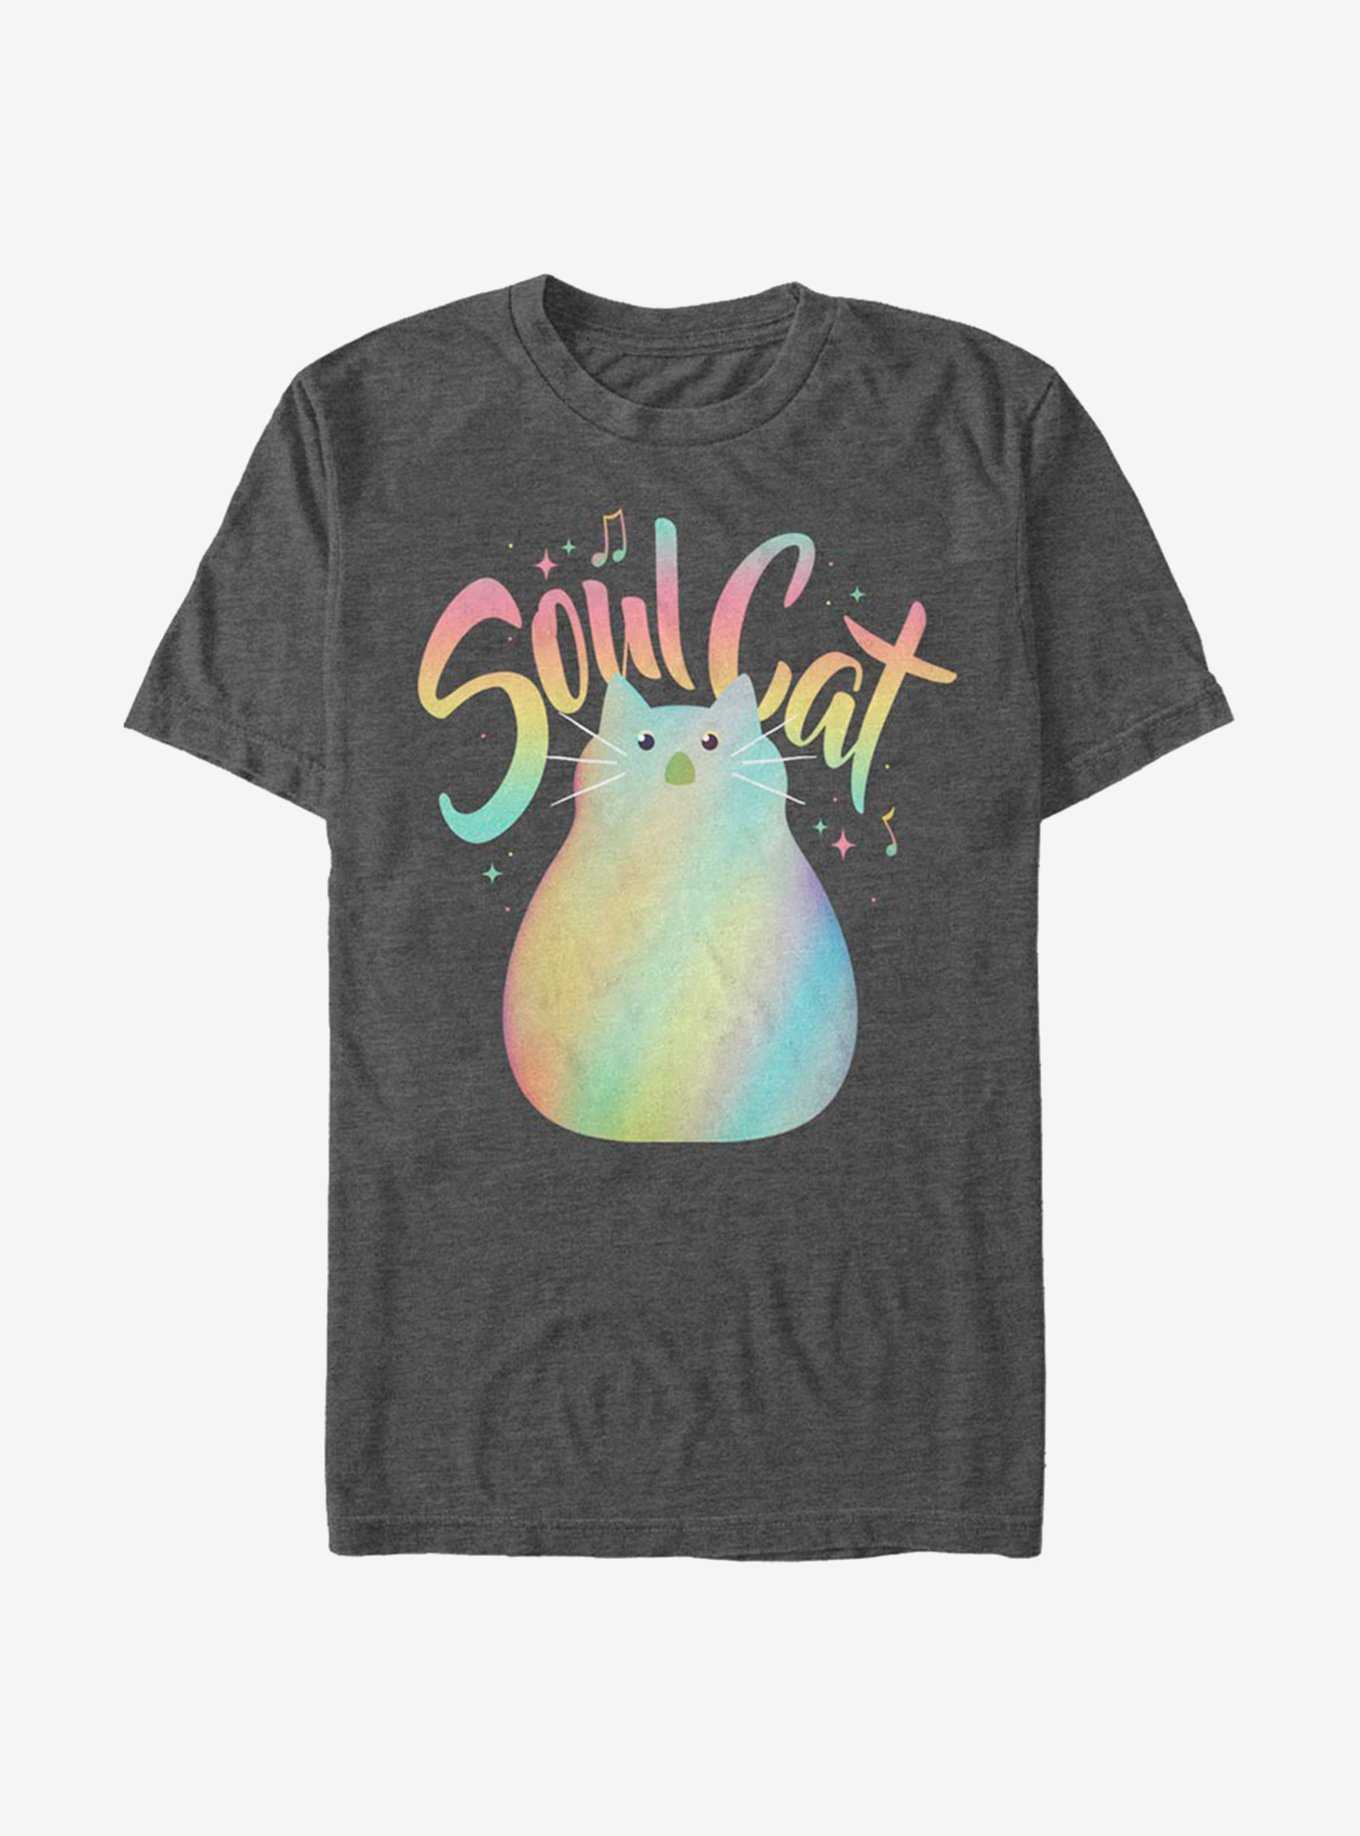 Disney Pixar Soul Cat Pastel T-Shirt, CHAR HTR, hi-res